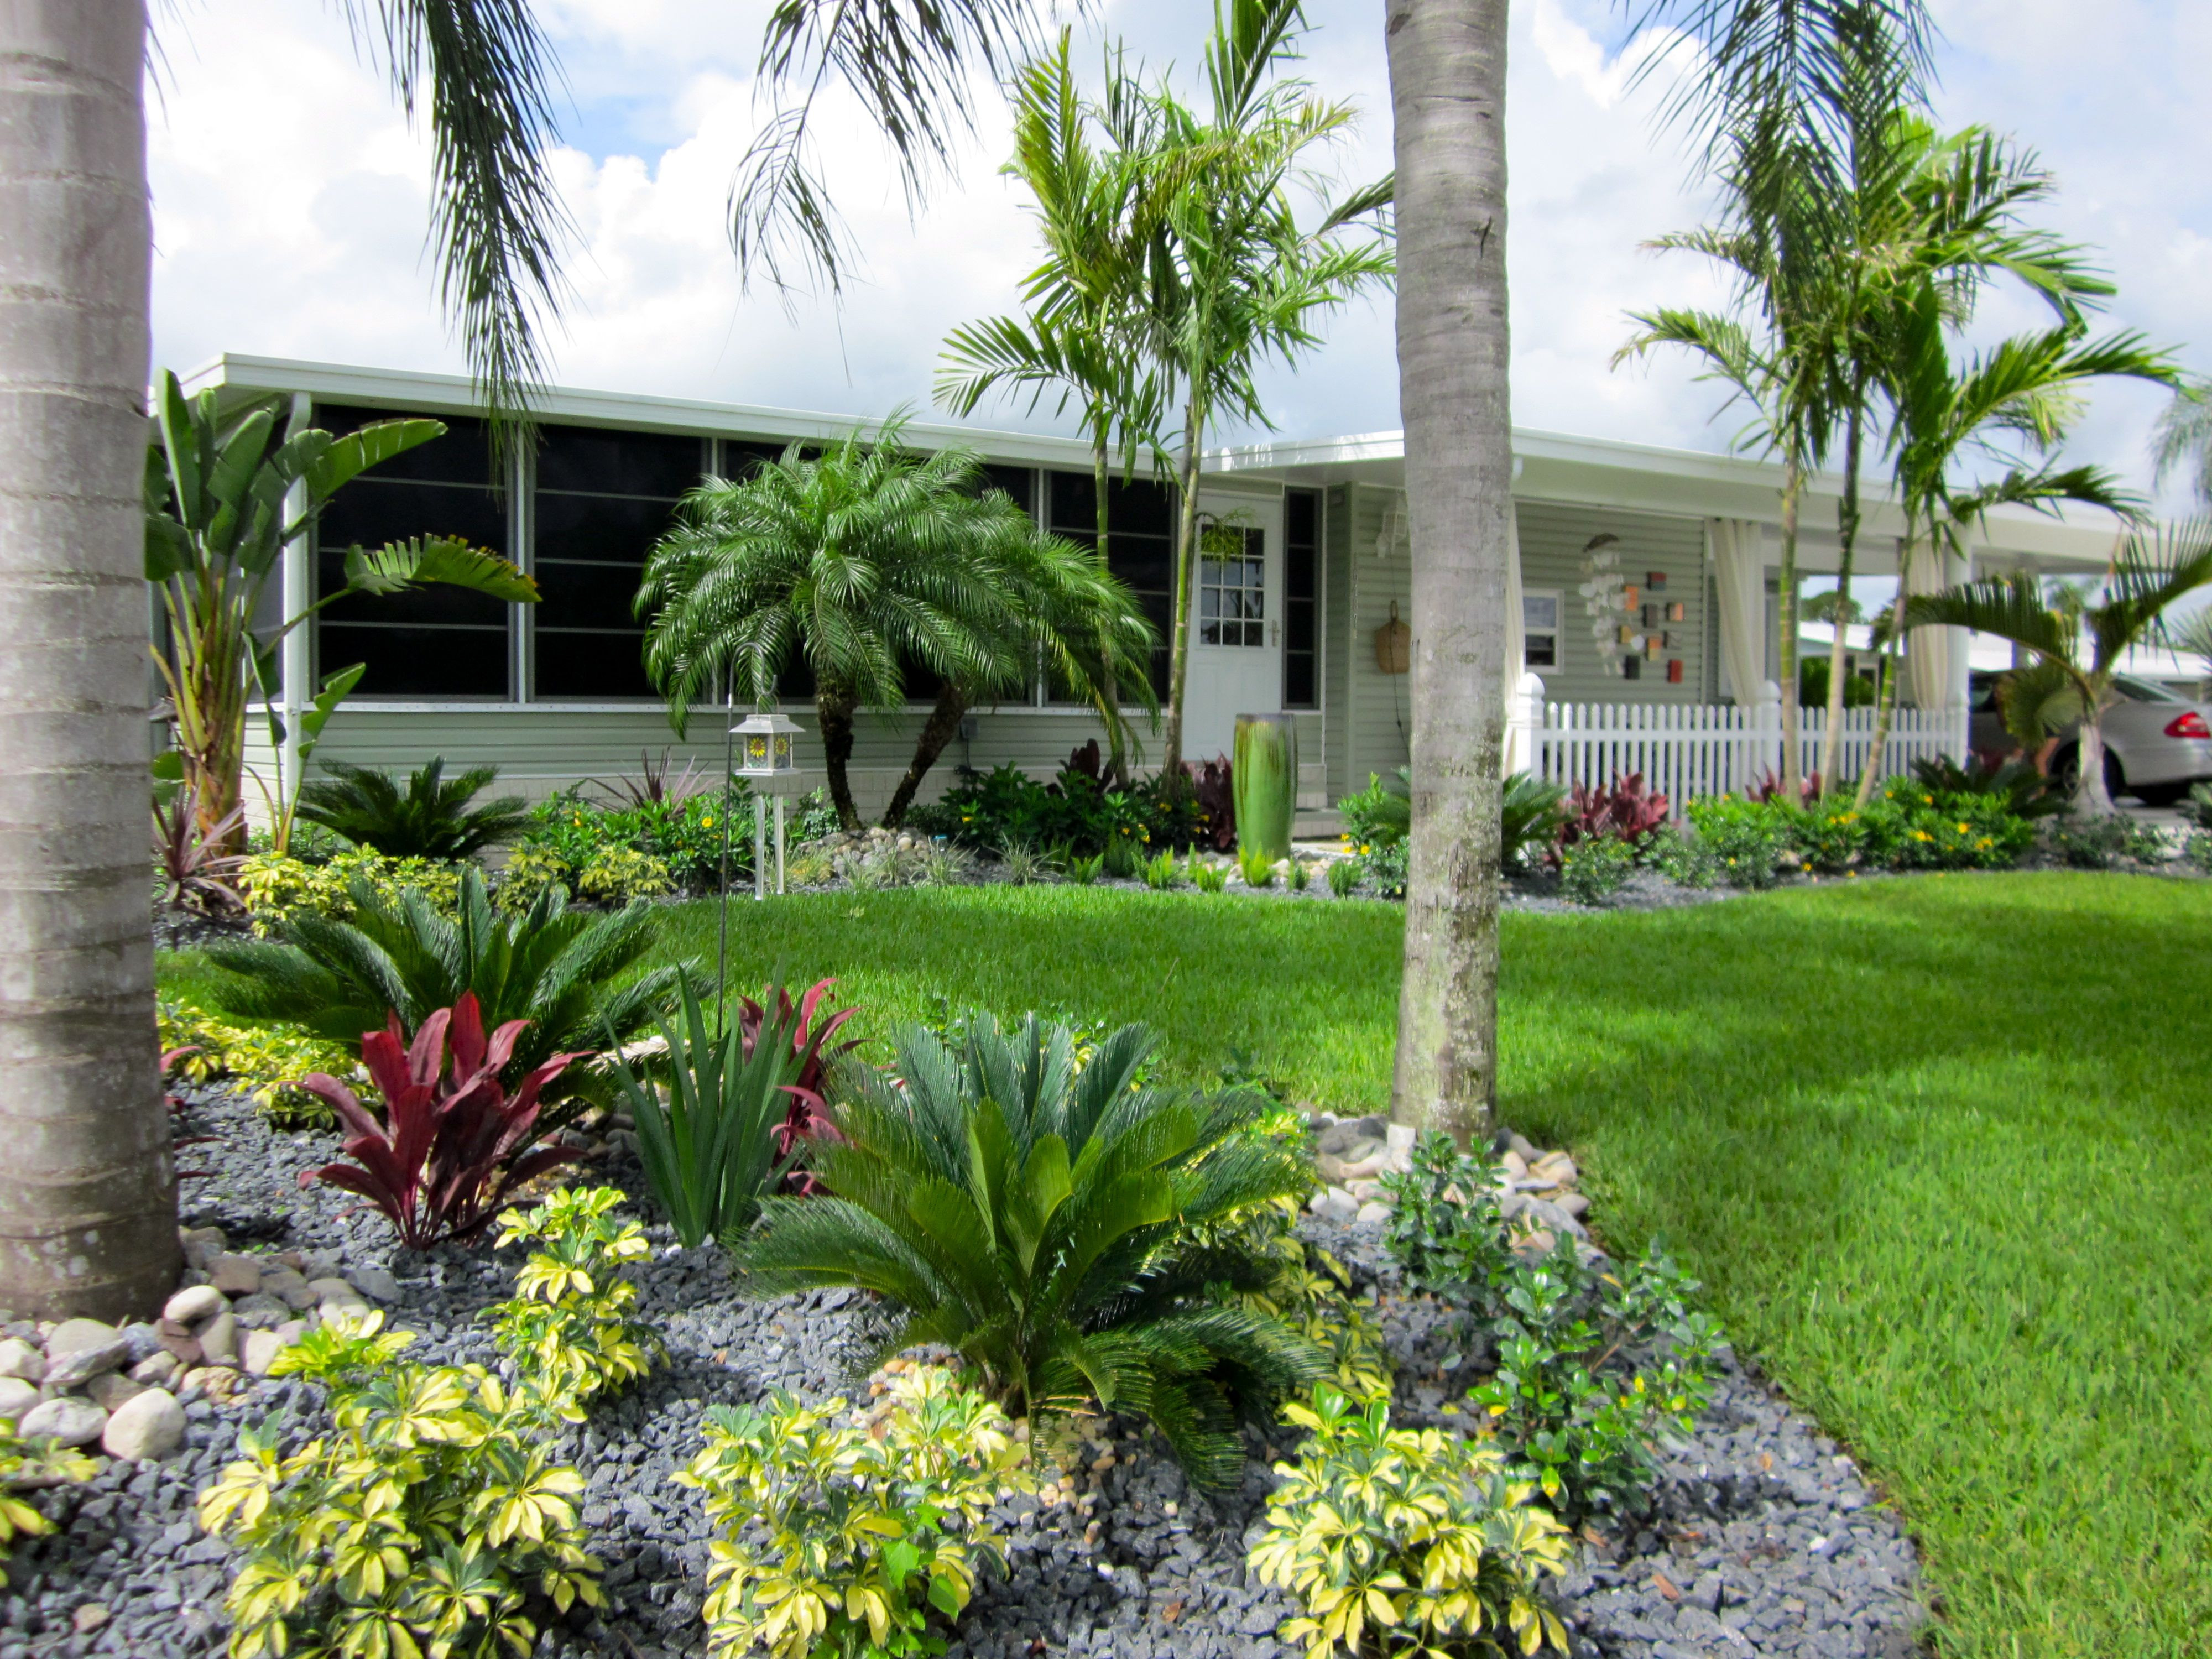 Best ideas about Florida Landscape Ideas
. Save or Pin Ideas florida landscapes garden design ideas Now.